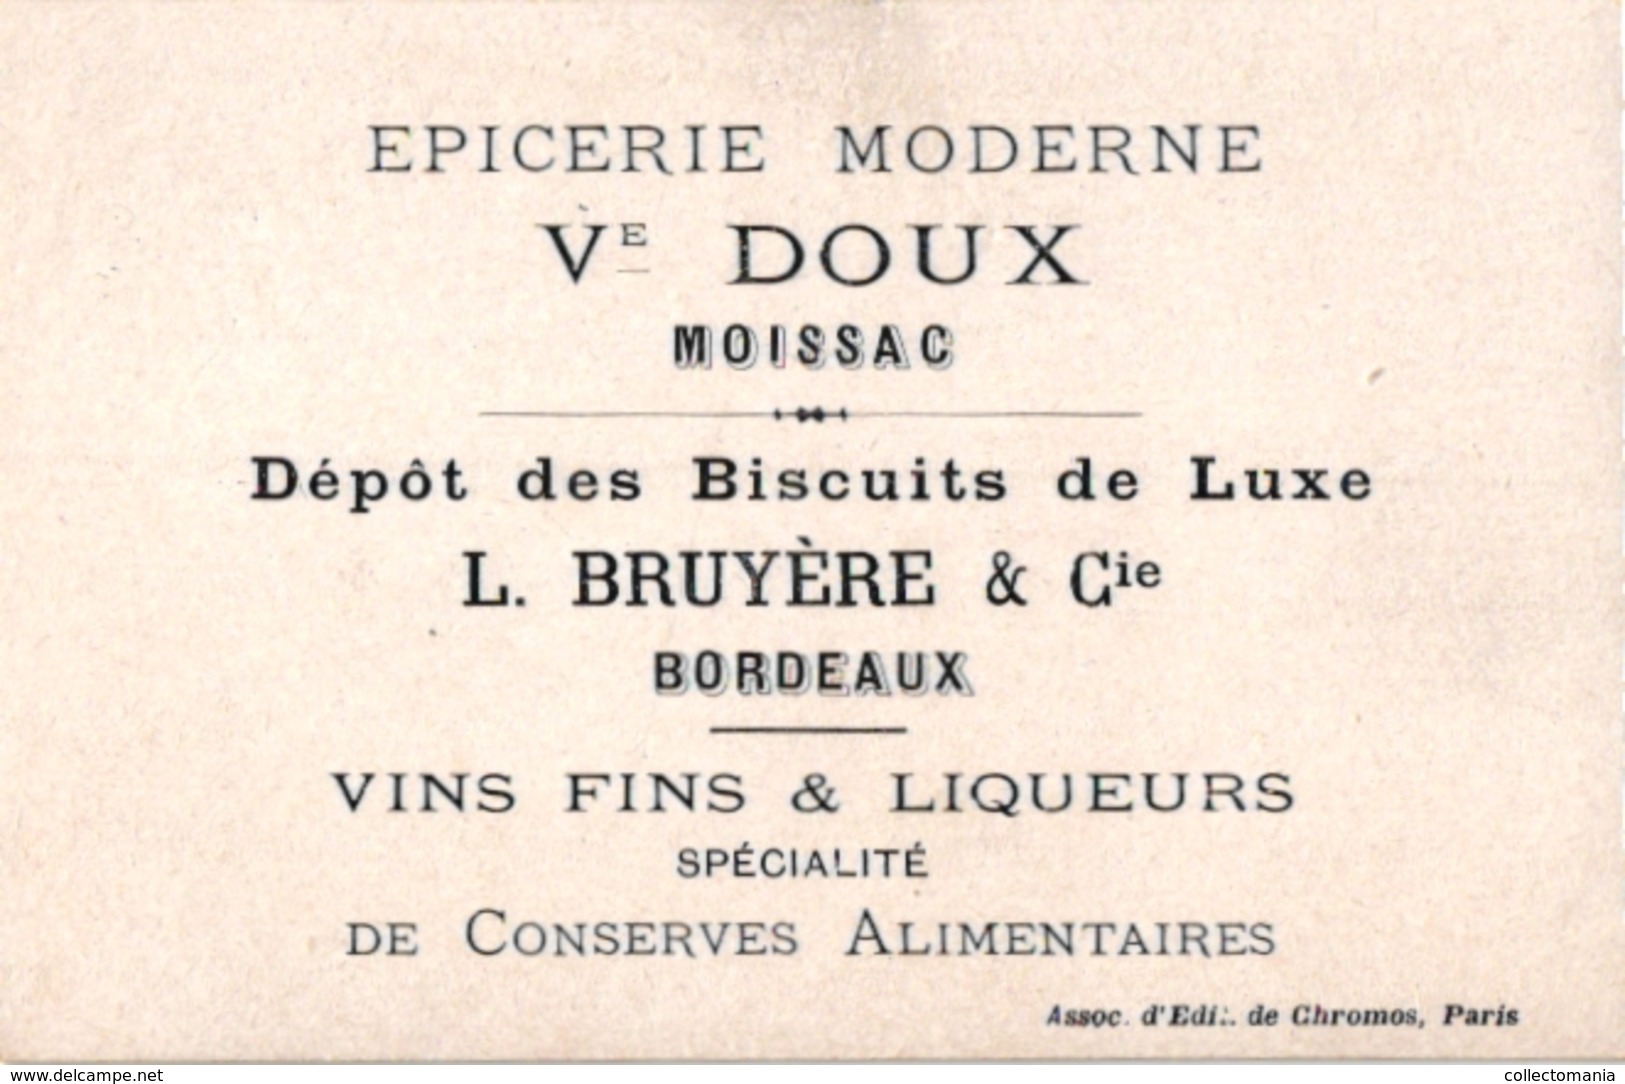 1880 - 5 chromo litho  Pub Guérin Boutron Chocolat Besnier Le Mans Couzan Source Brault Le Jeu de Tonneau Game of Barel